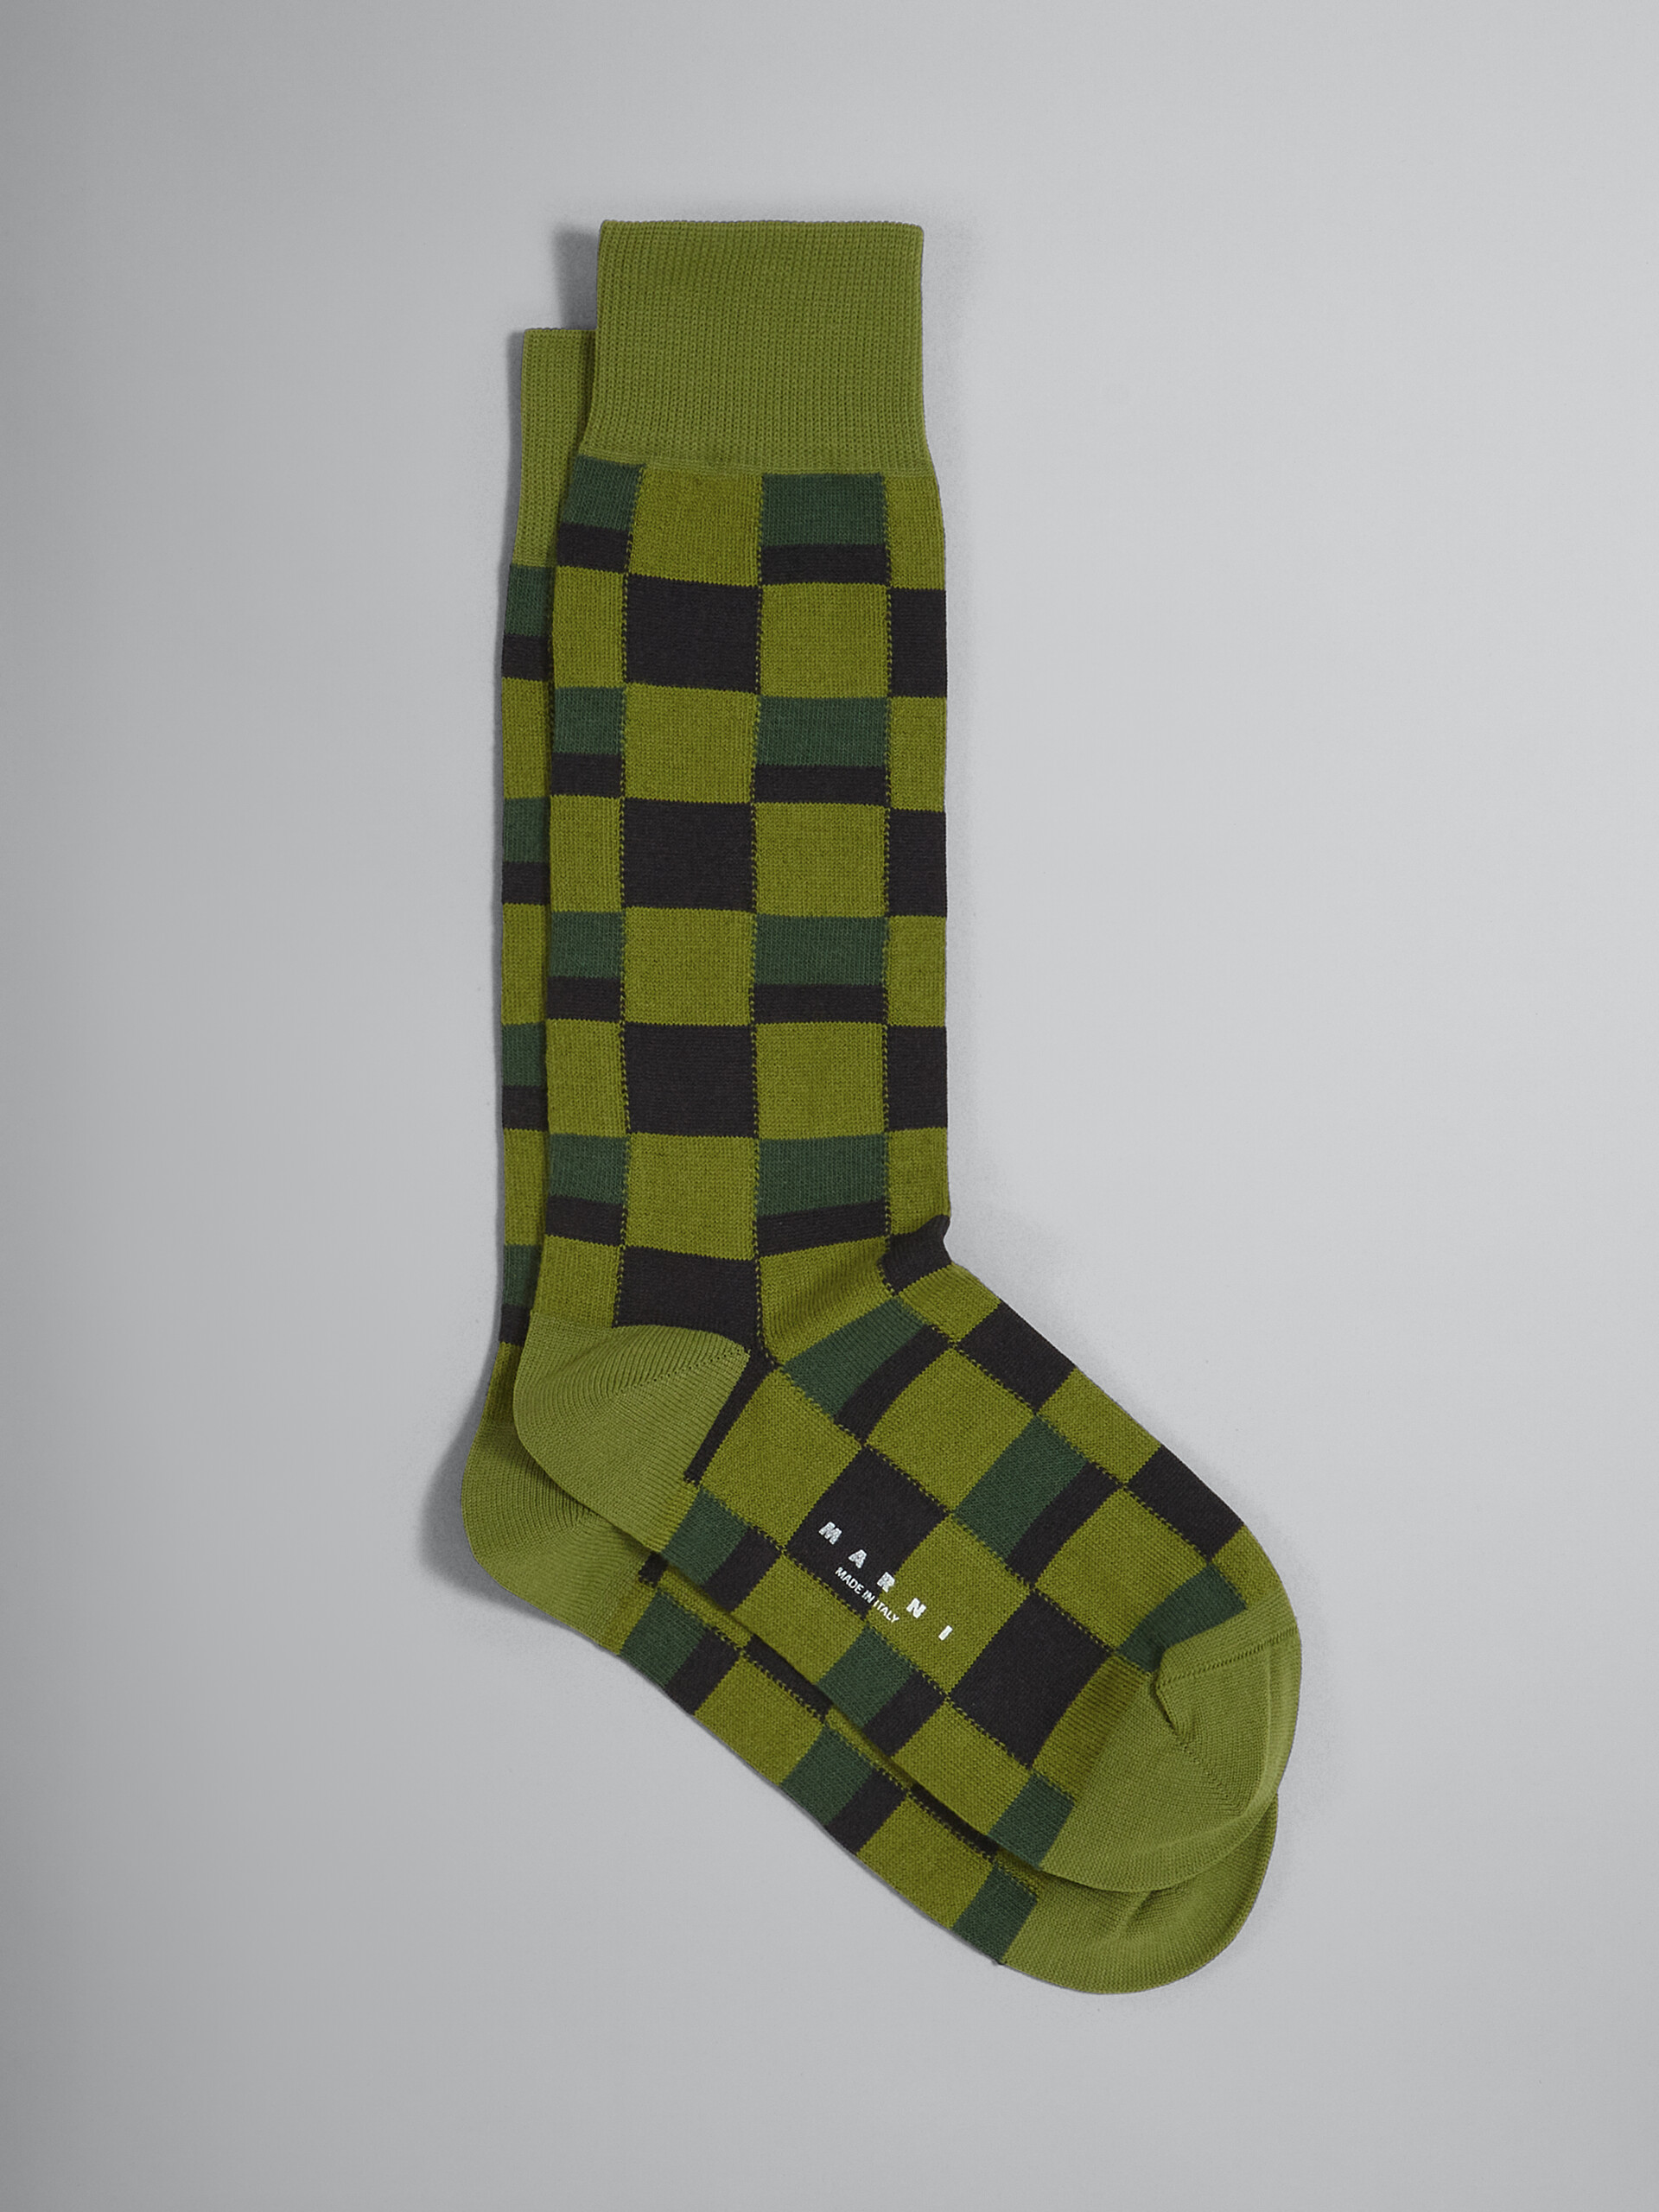 Iconic Damier jacquard cotton and nylon sock - Socks - Image 1